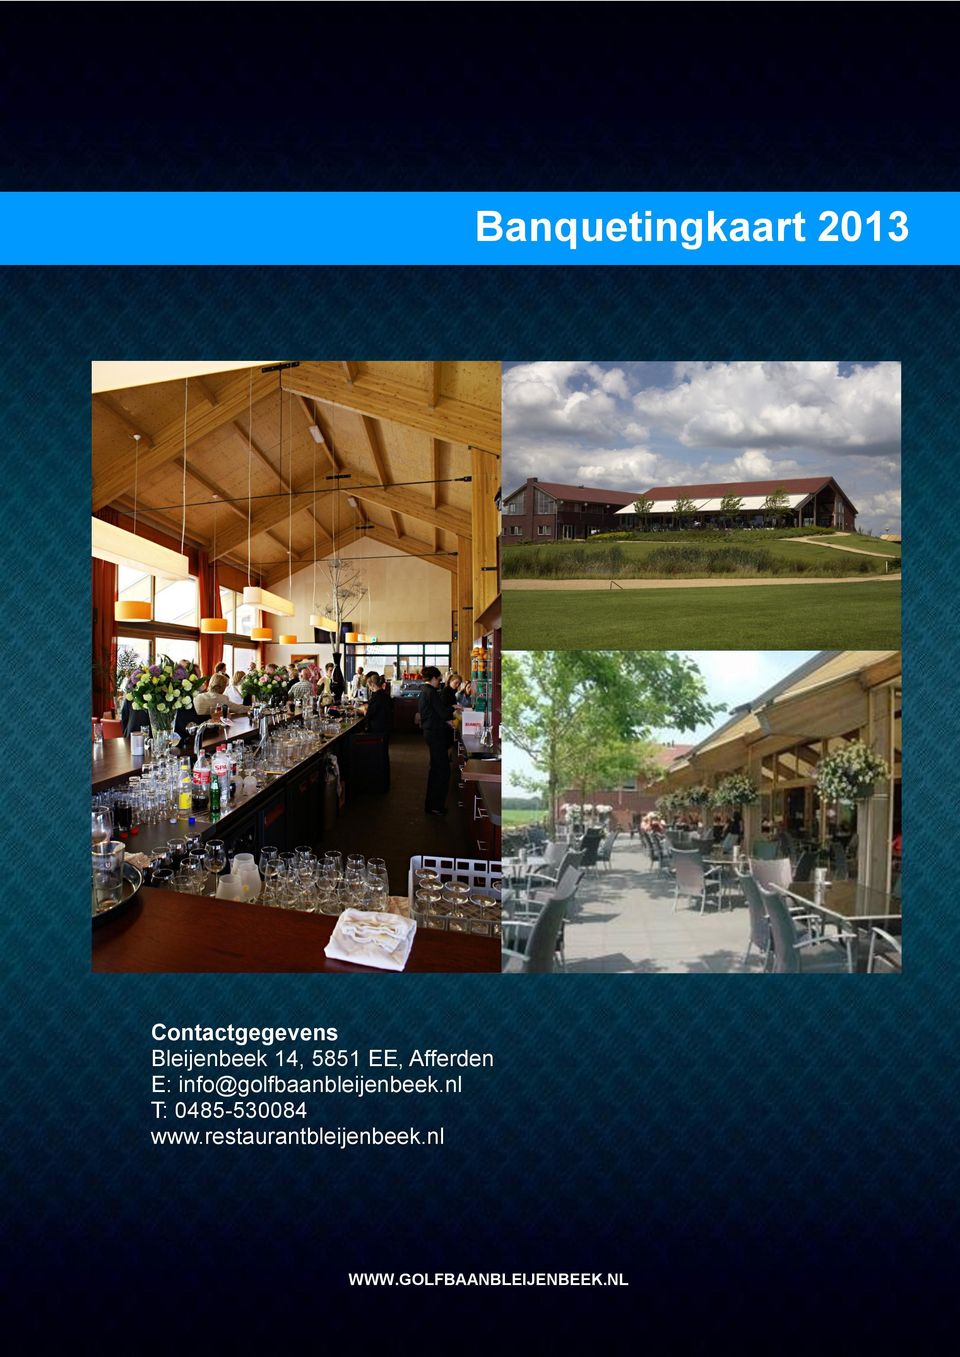 info@golfbaanbleijenbeek.